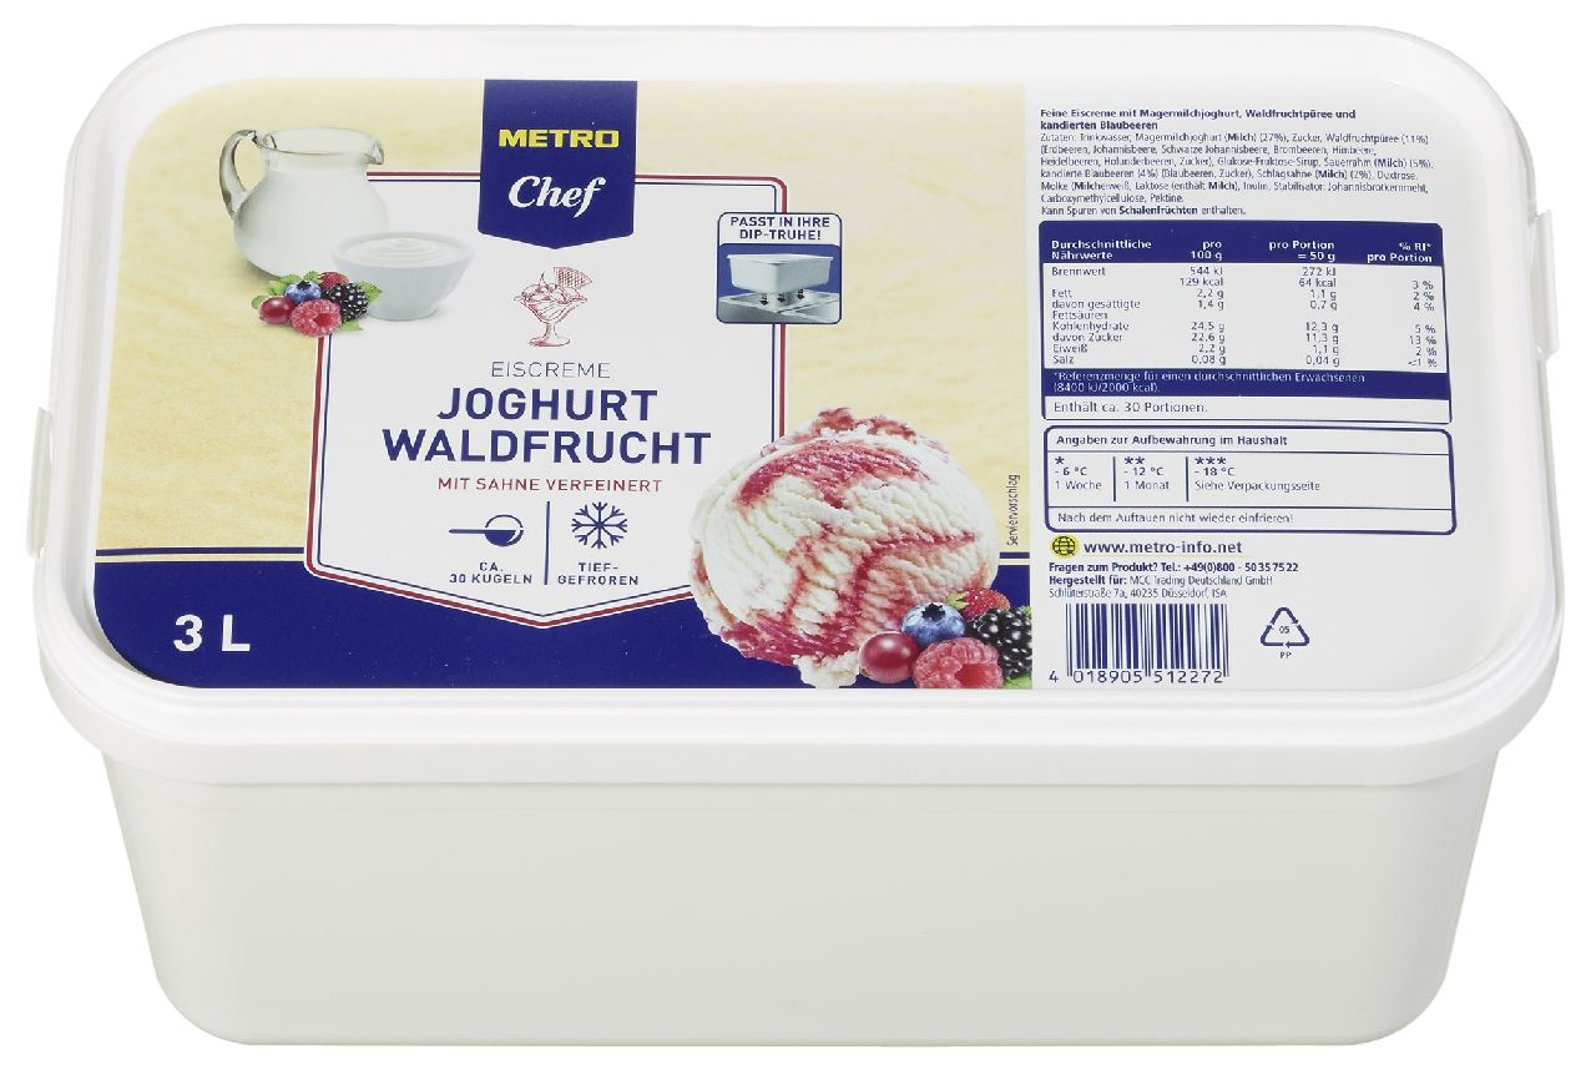 METRO Chef Eiscreme Joghurt Waldfrucht mit Sahne verfeinert - 3 kg Packung